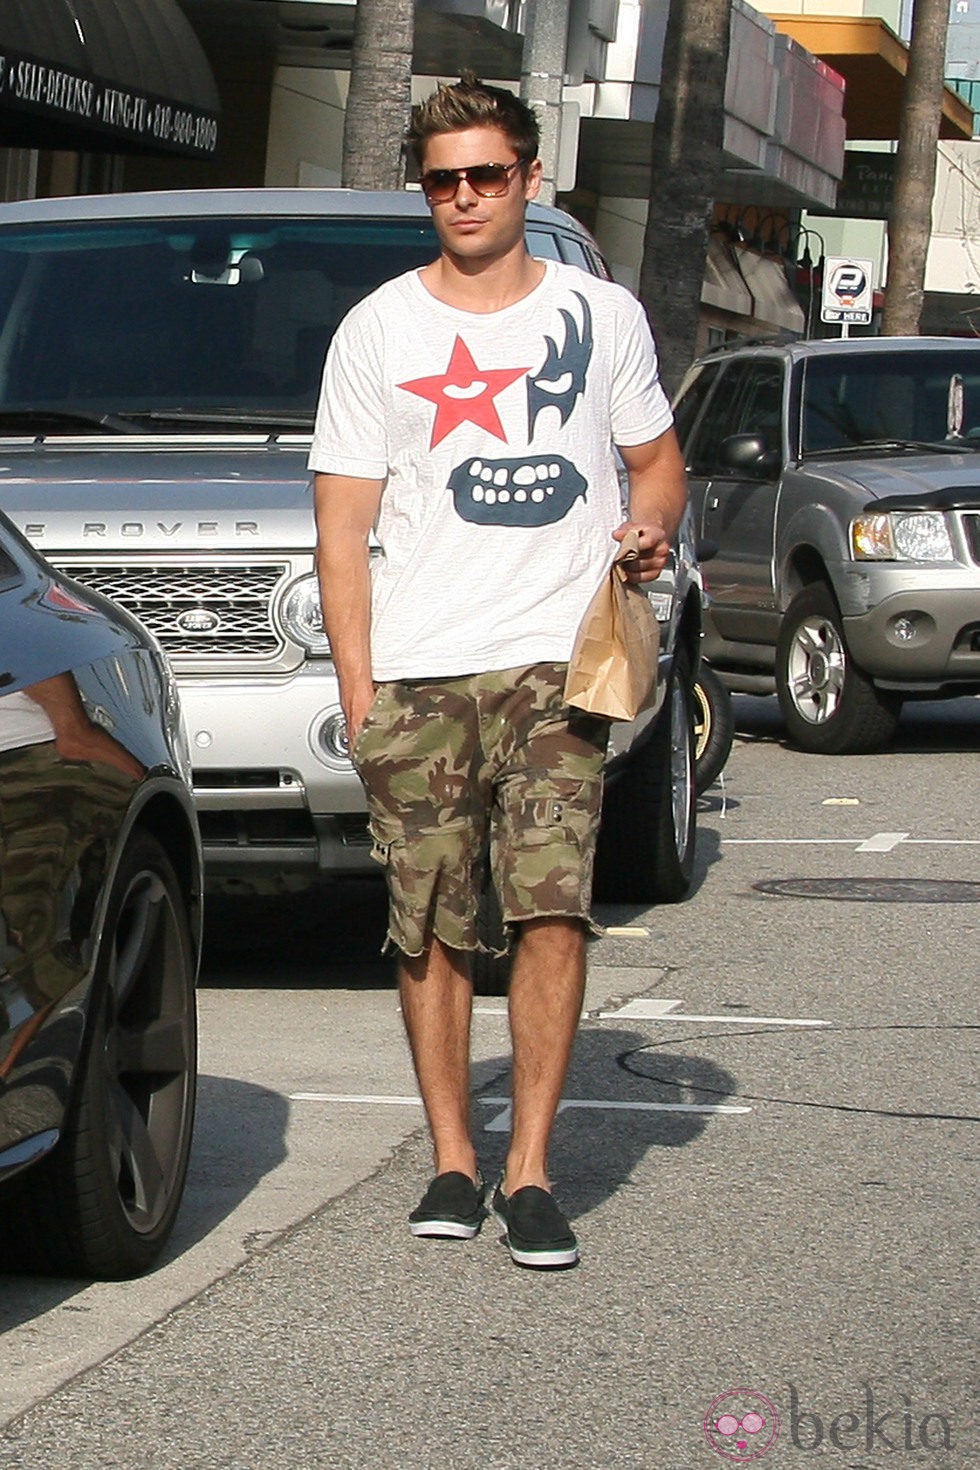 Efron con gafas de sol y pantalones militares - Zac Efron, de chico Disney a actor de Hollywood - Bekia Actualidad